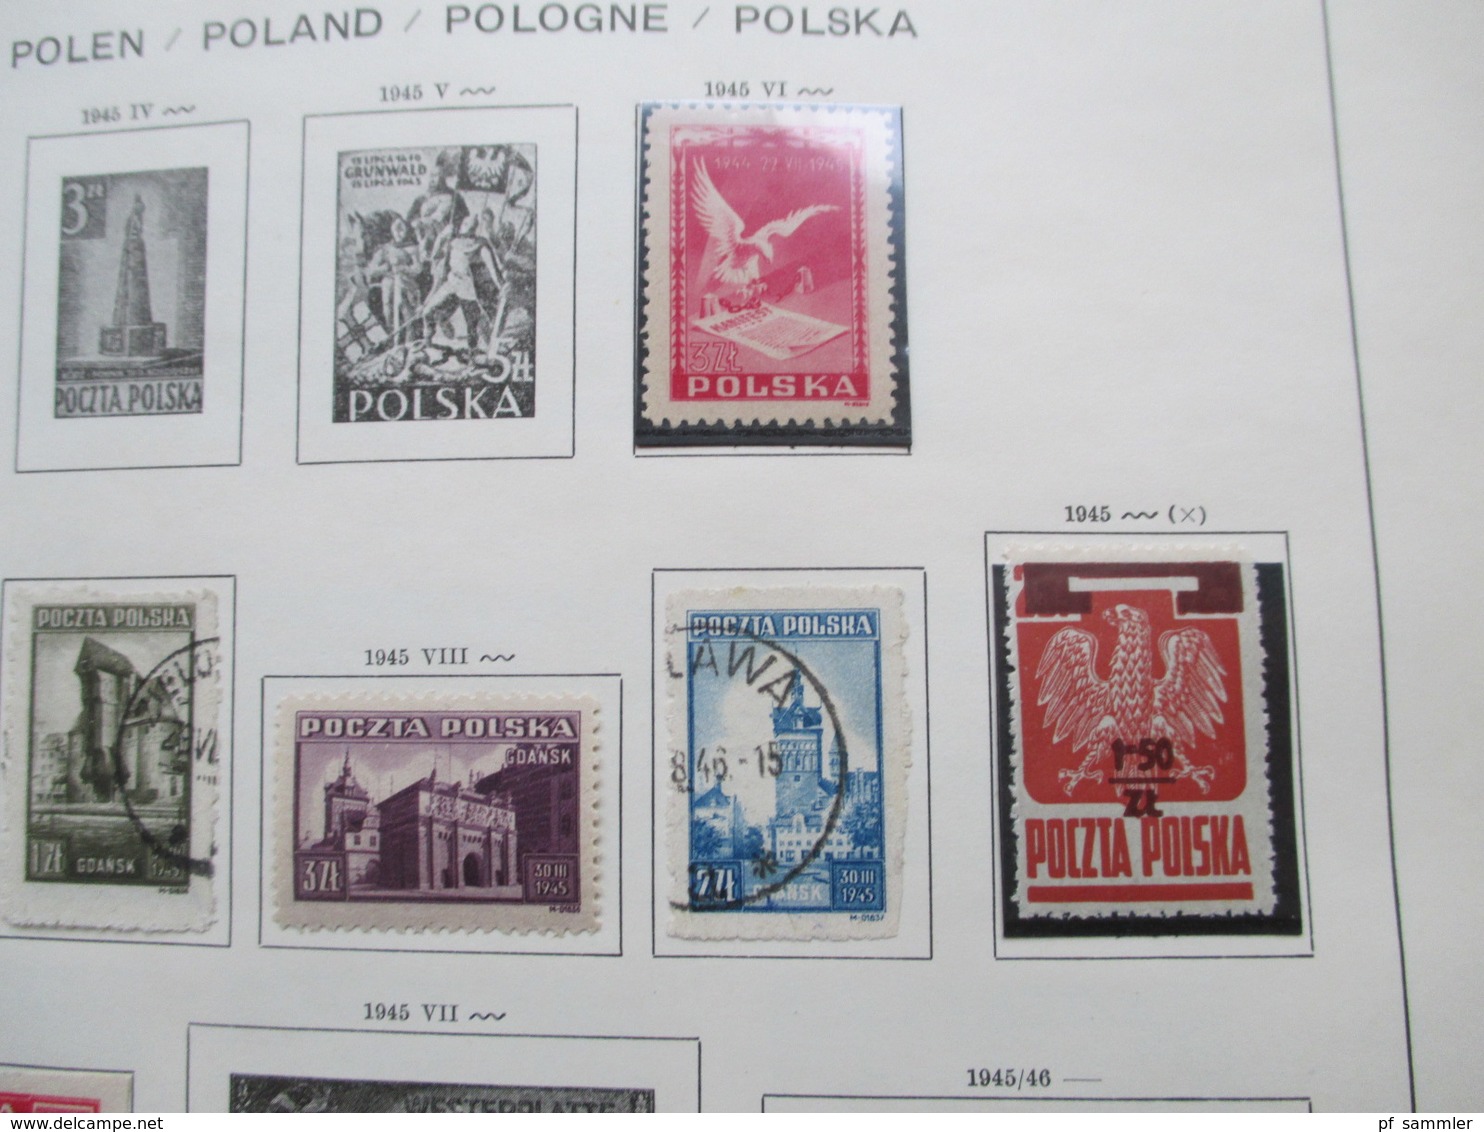 Sammlung Polen im Schaubek VD Album ab 1919 - 91 viel o aber auch einiges * (Erstfalz), wenige ** mit Blocks! Fundgrube